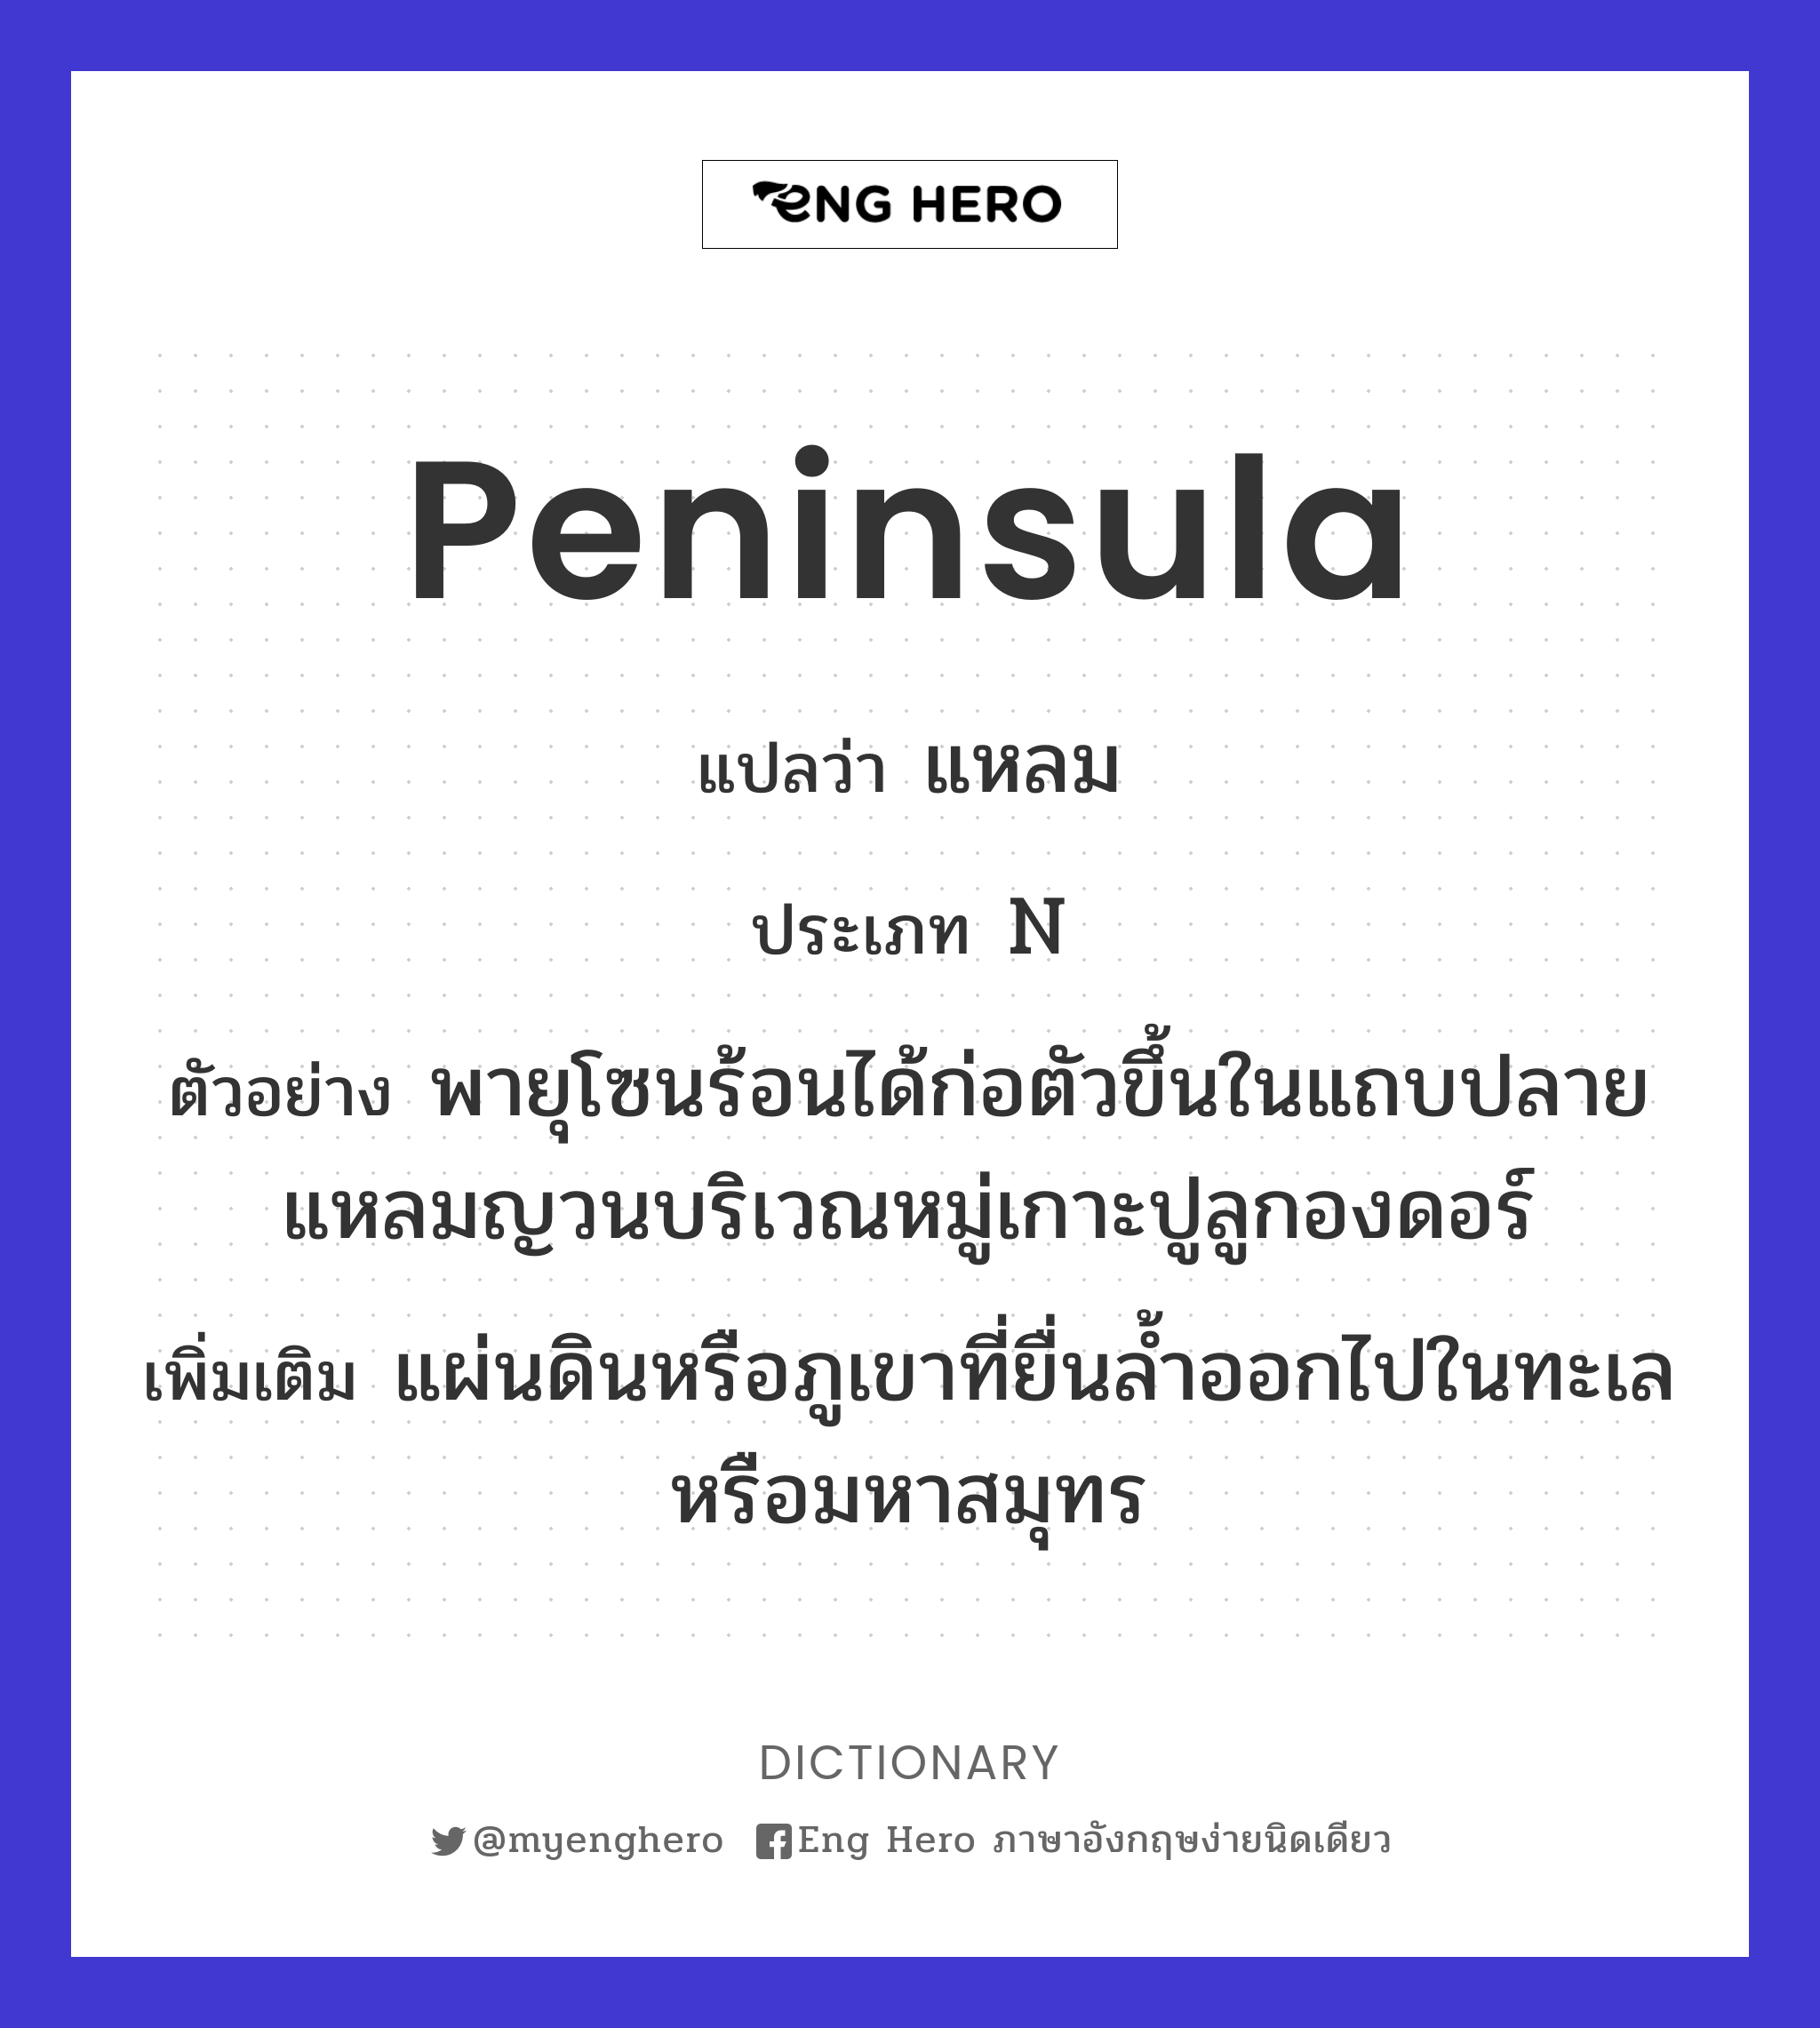 peninsula